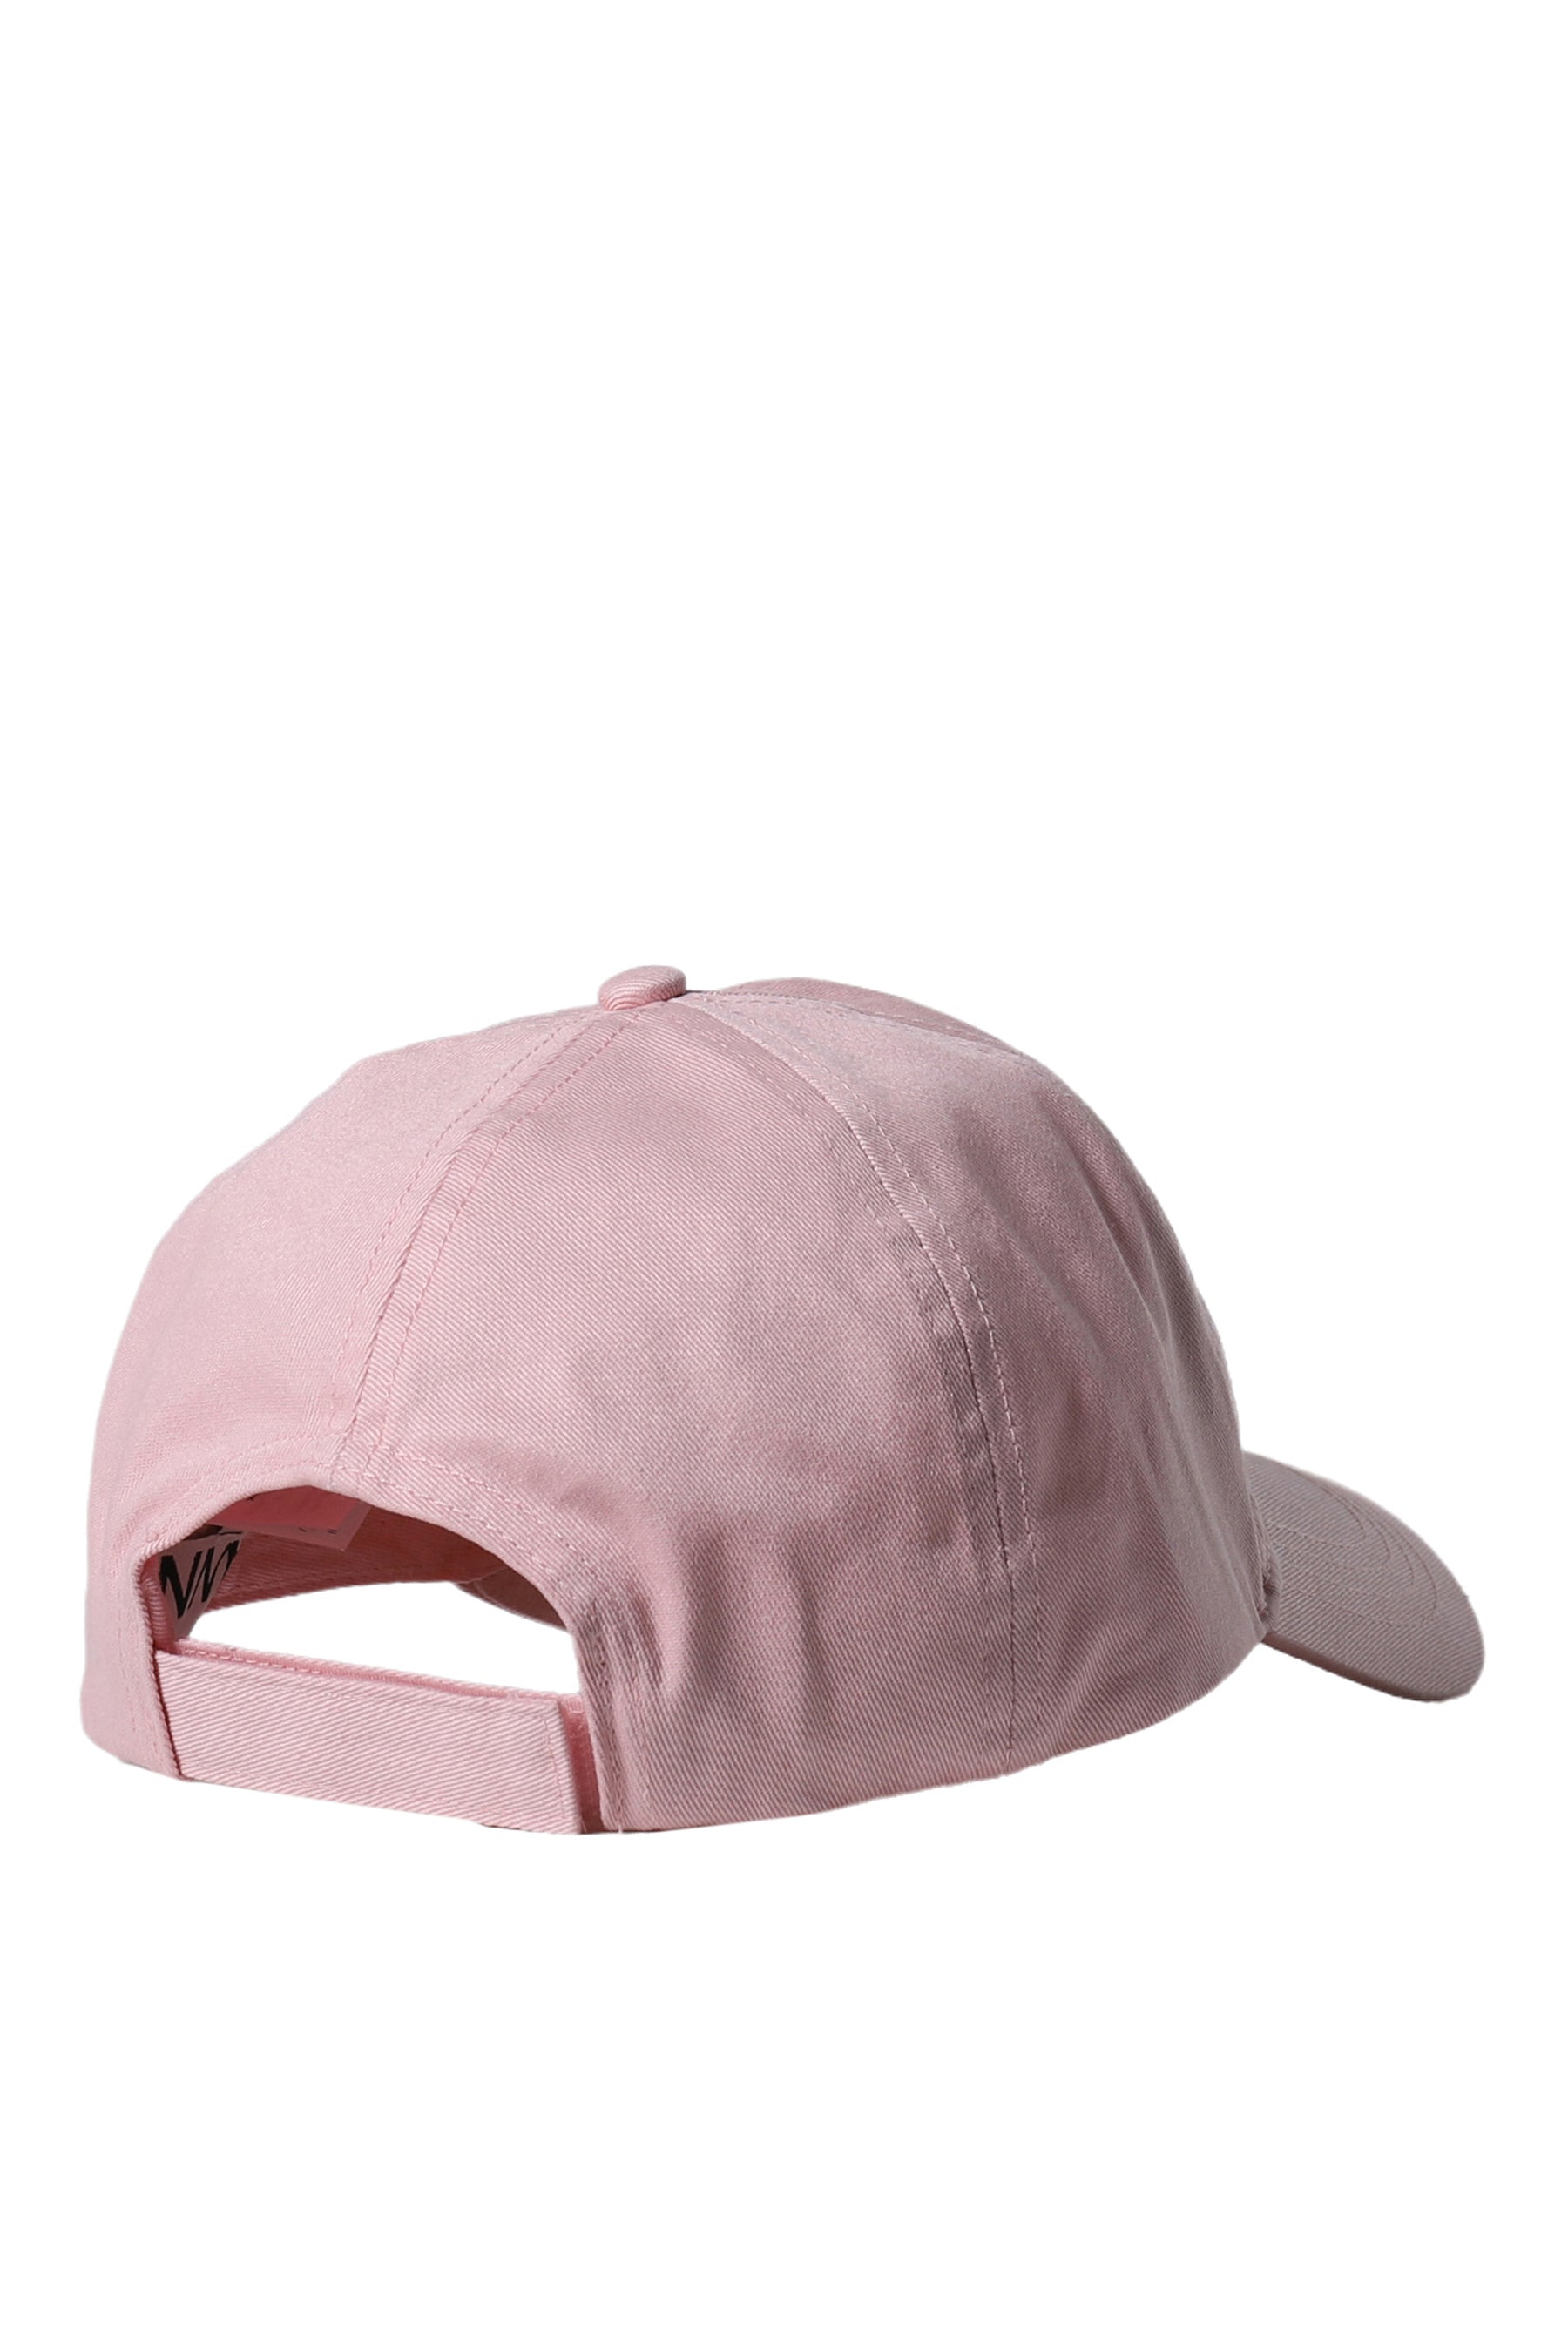 CAP HAT / PNK